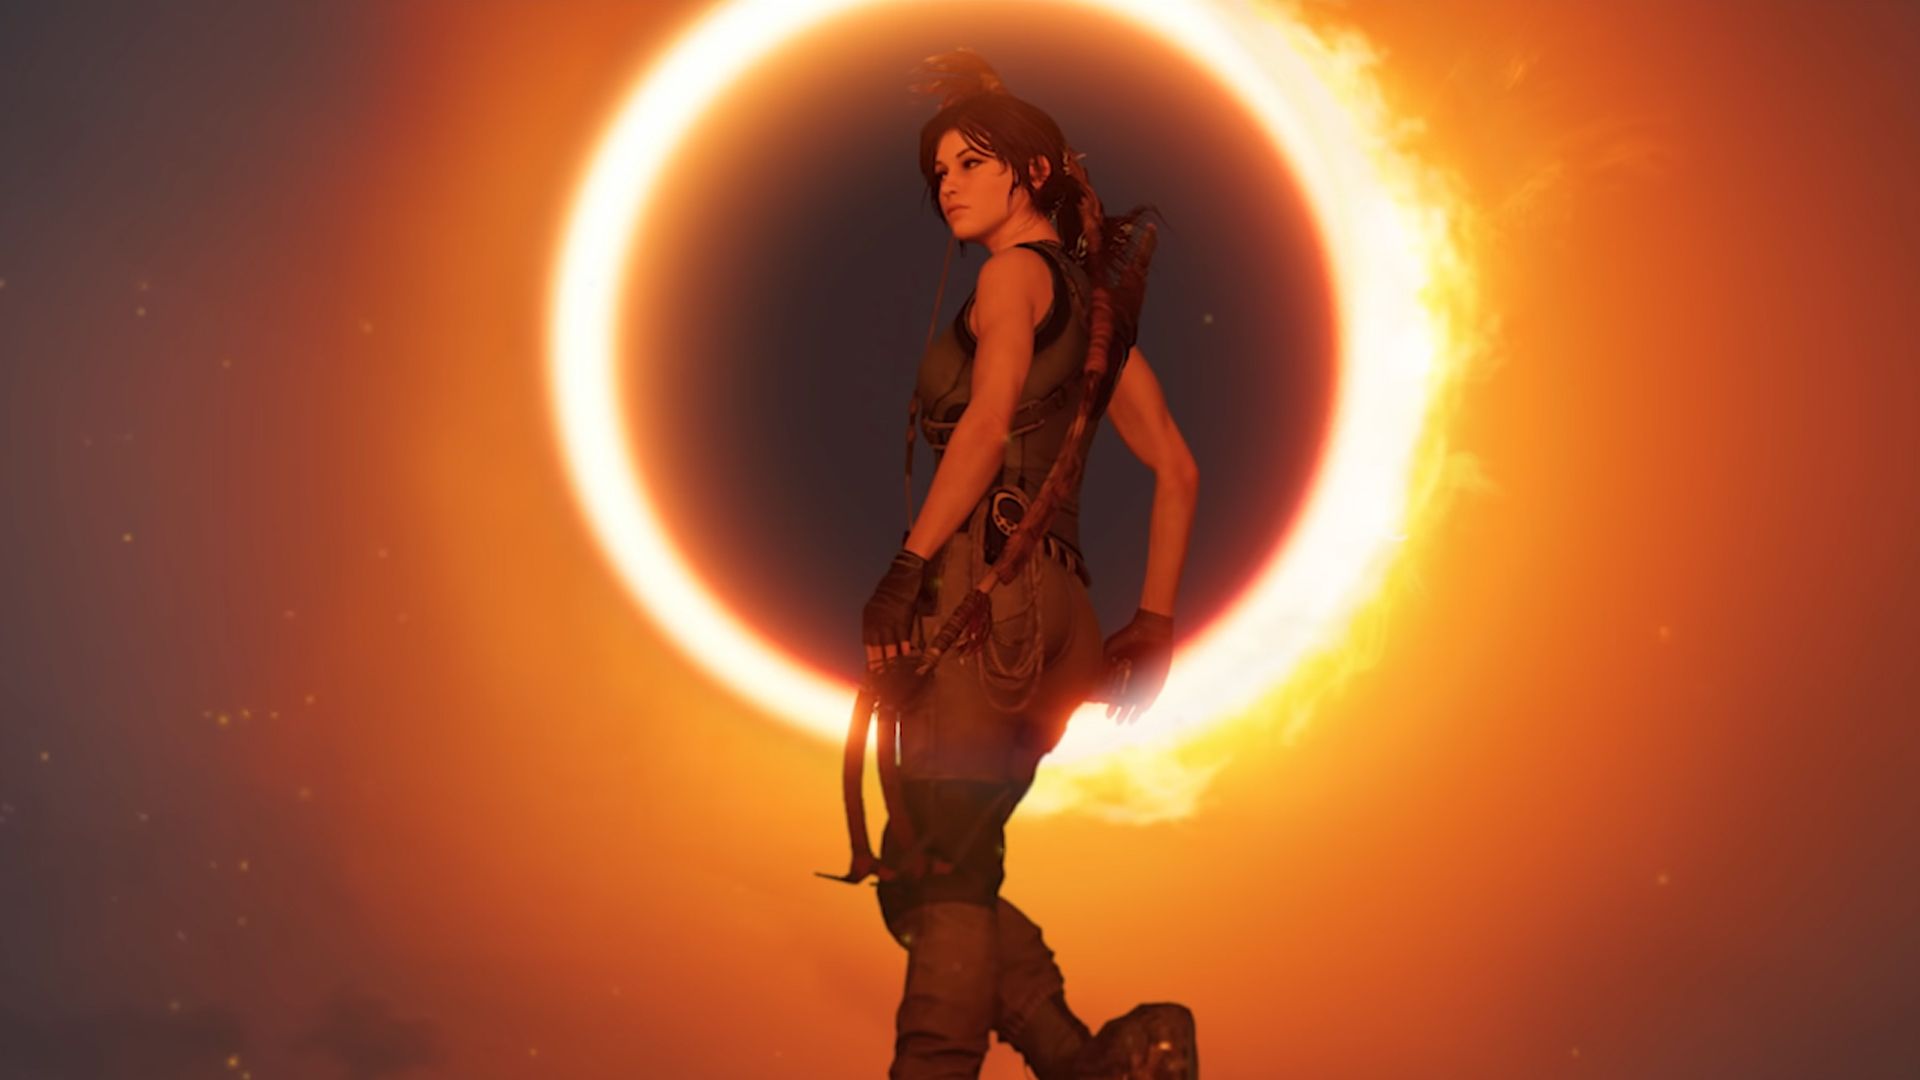 Tomb Raider: A Origem  Peruca, efeitos práticos e uma dose de